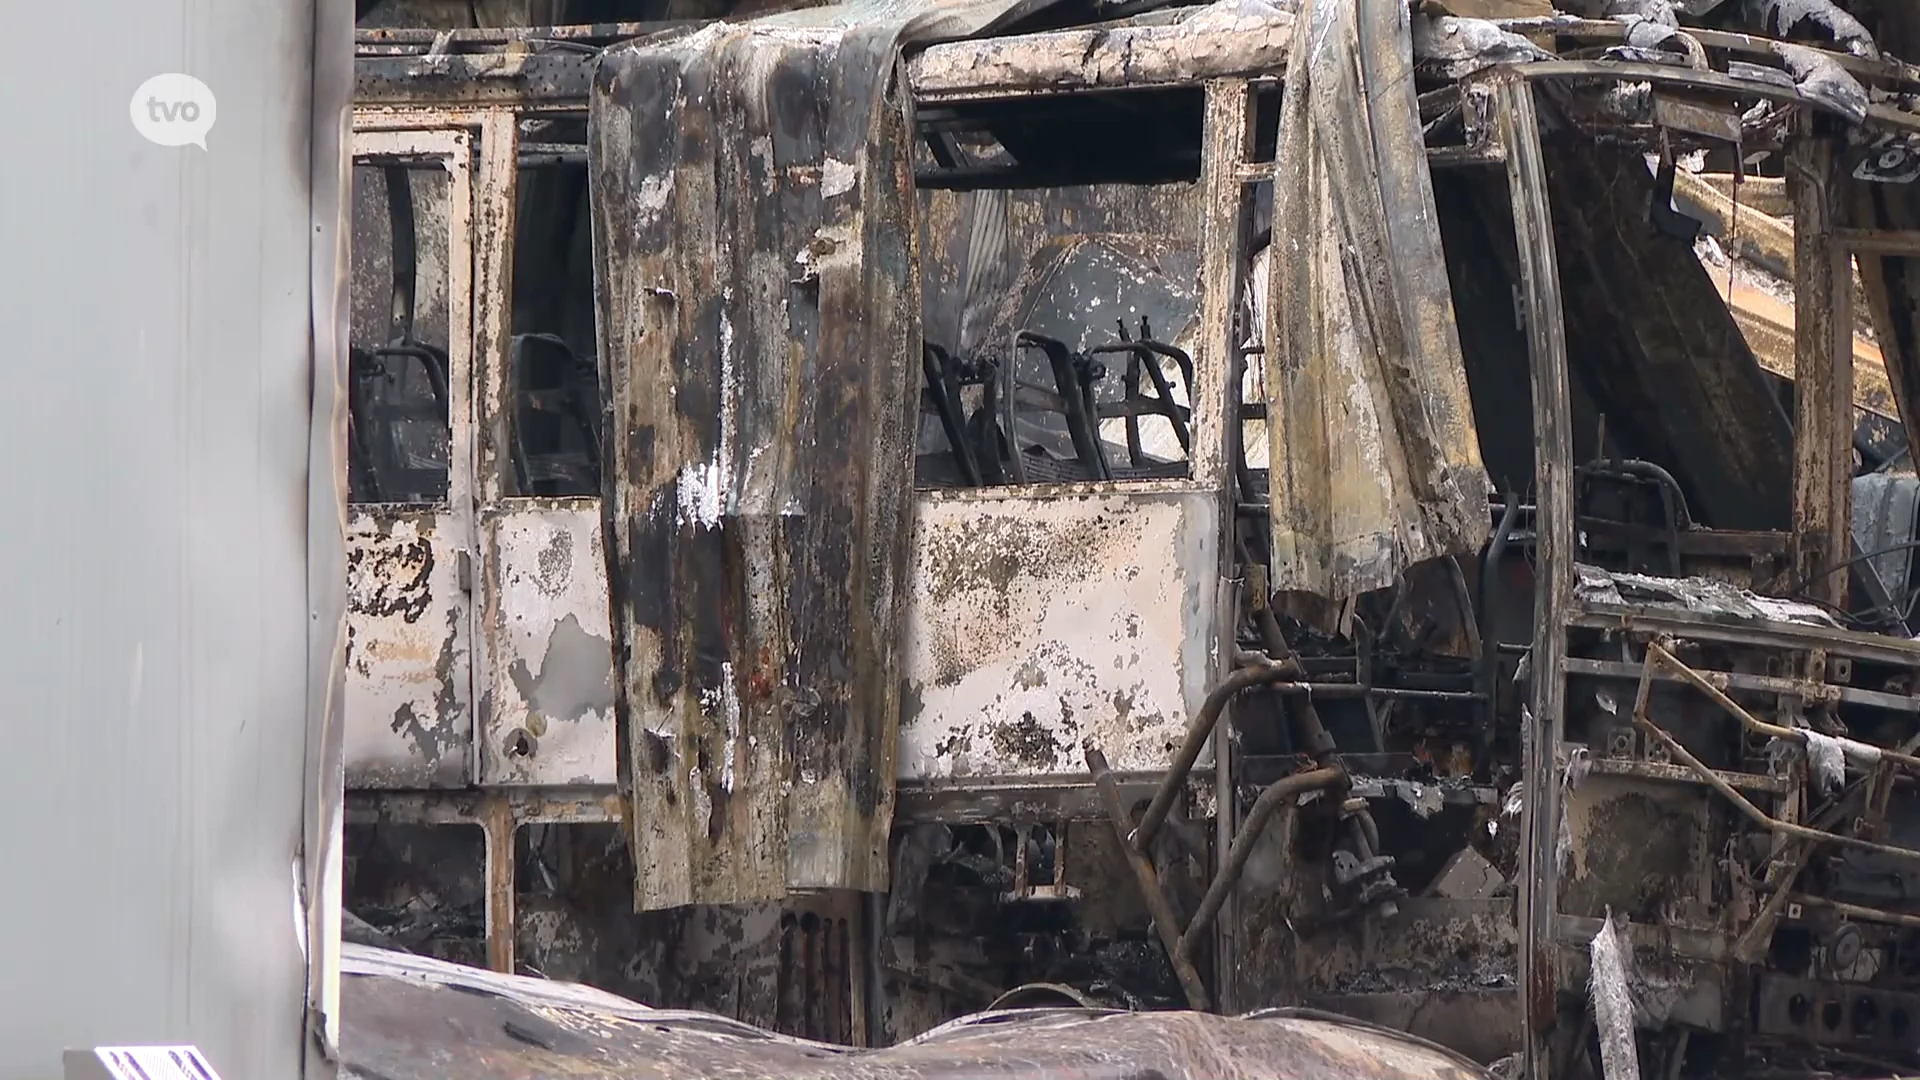 Dag na zware brand bij busbedrijf in Lebbeke: "Kwaad opzet is uitgesloten"